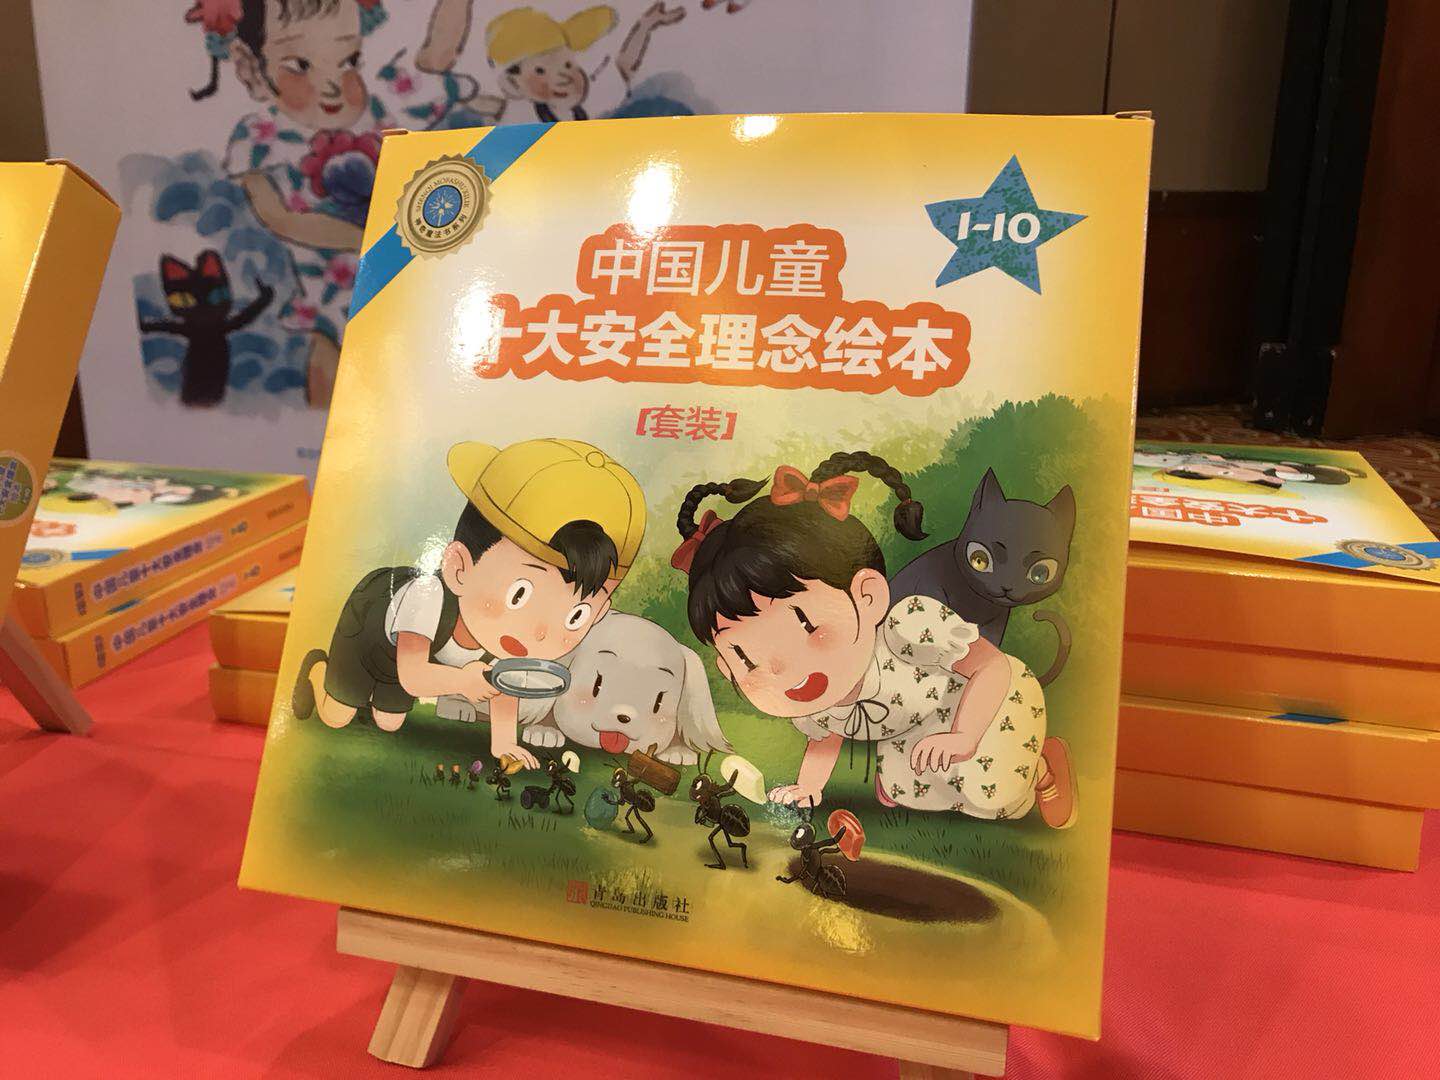 中國兒童十大安全理念繪本叢書